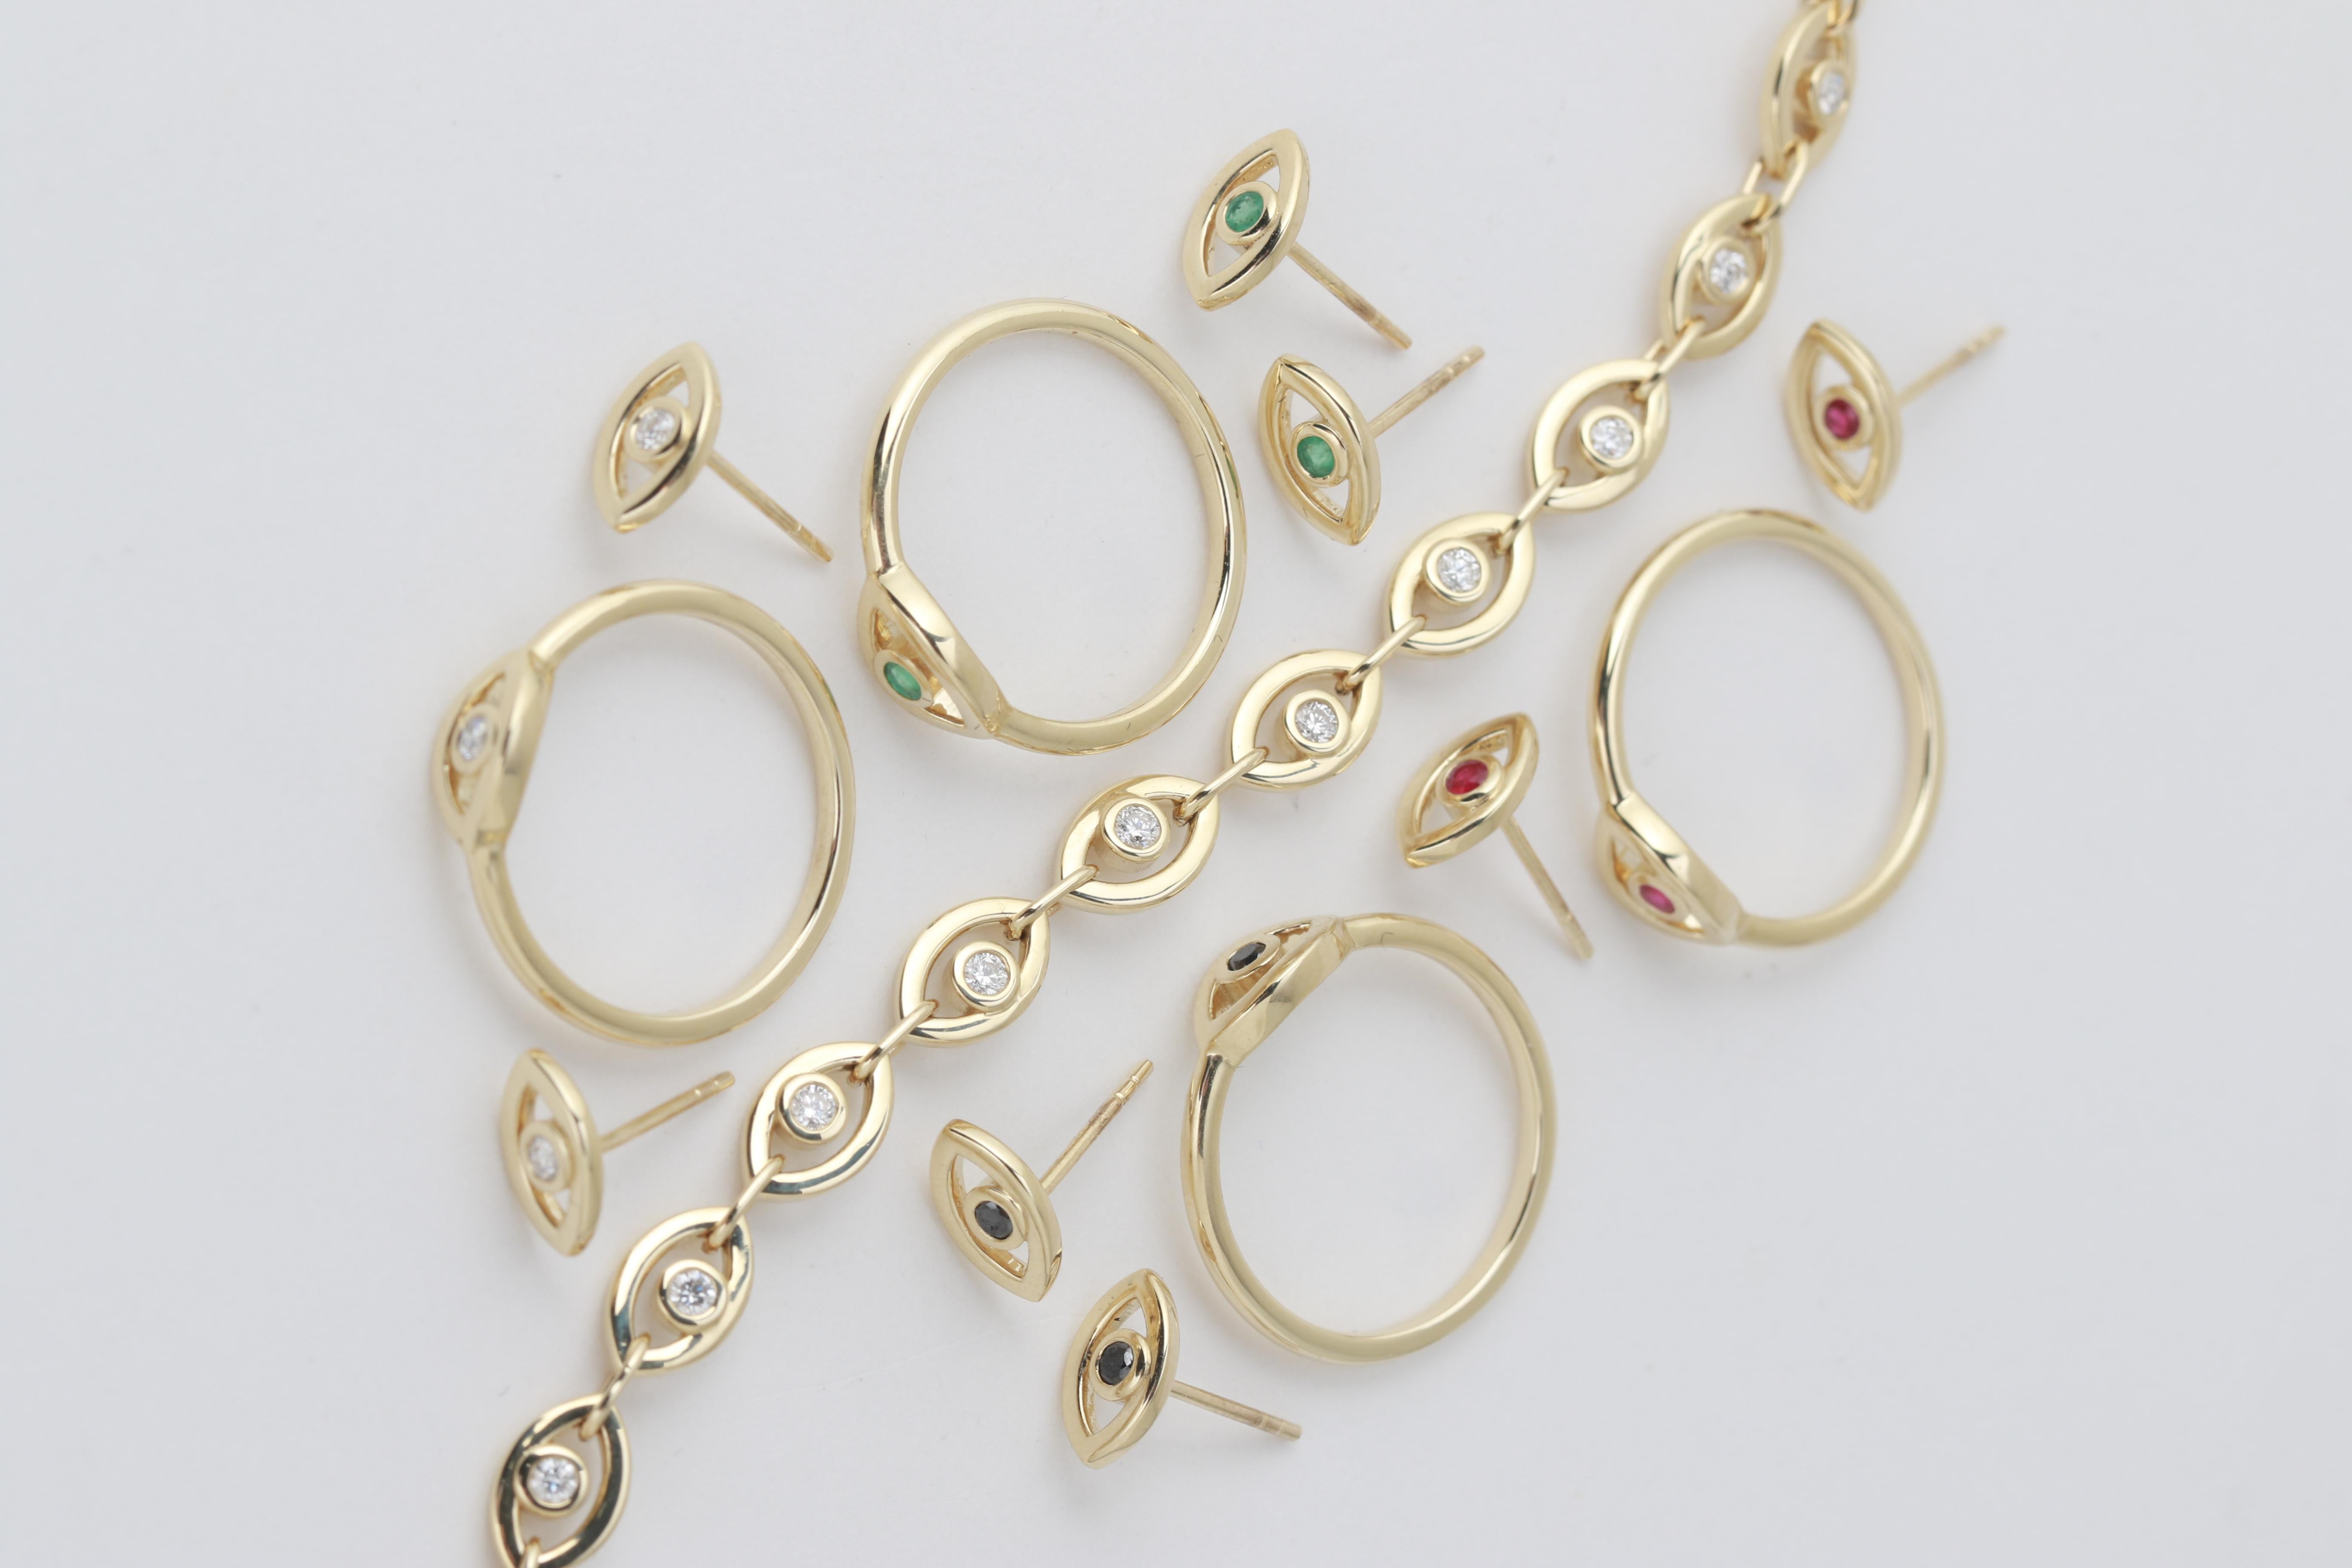 Augenförmige Glieder, mit weißen Diamanten verziert,  verbinden sich zu einem schönen Tennisarmband, das mit einem goldenen Verschluss gesichert ist.

weiße Diamanten, insgesamt 0,53 Karat